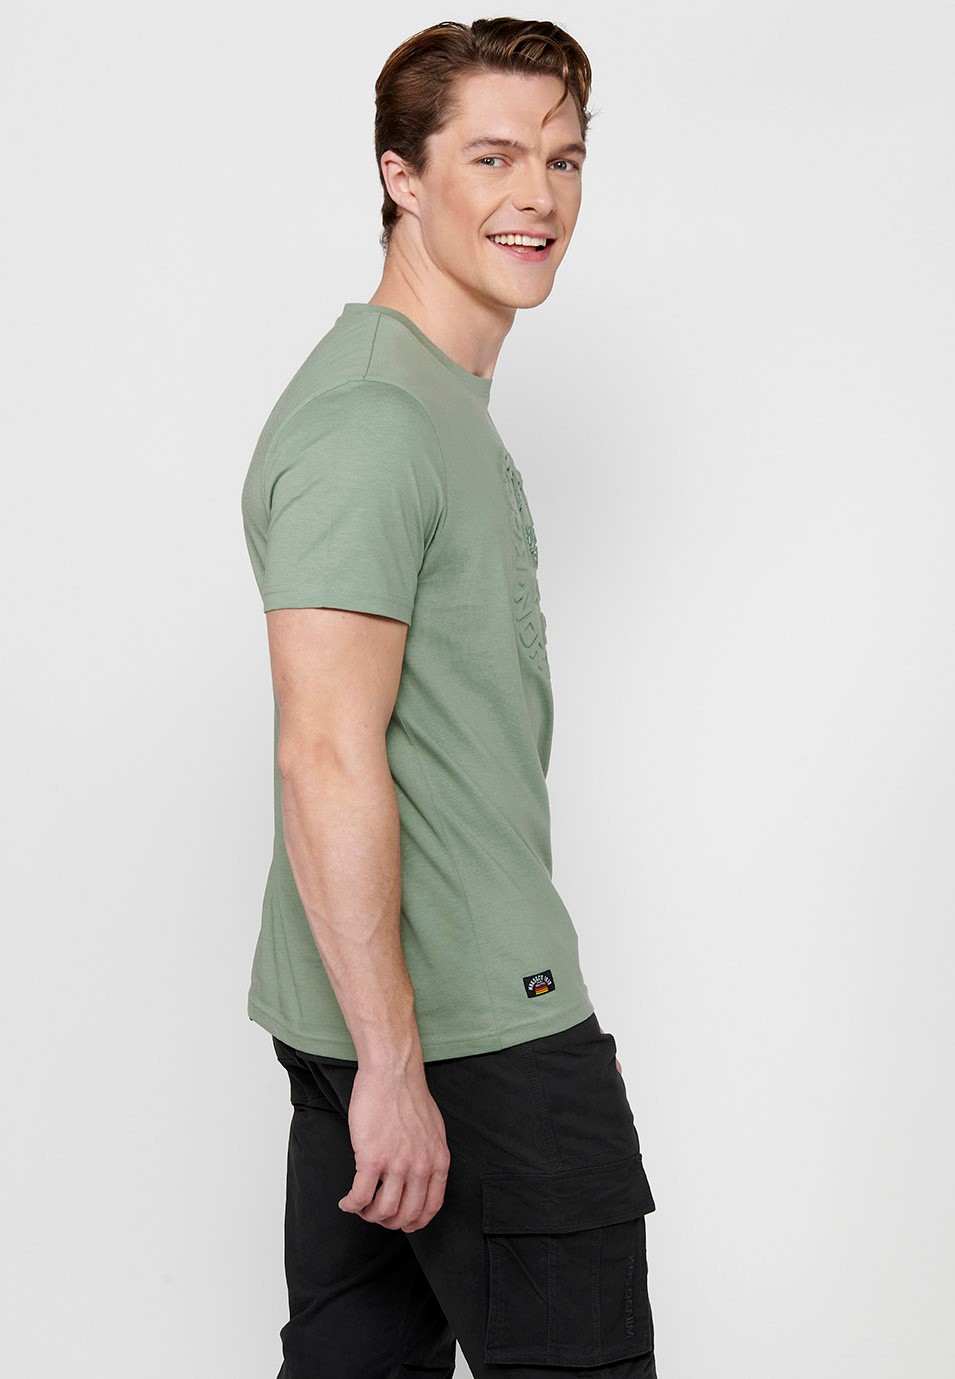 Men's Khaki Color Round Neck Cotton Short Sleeve T-shirt 4